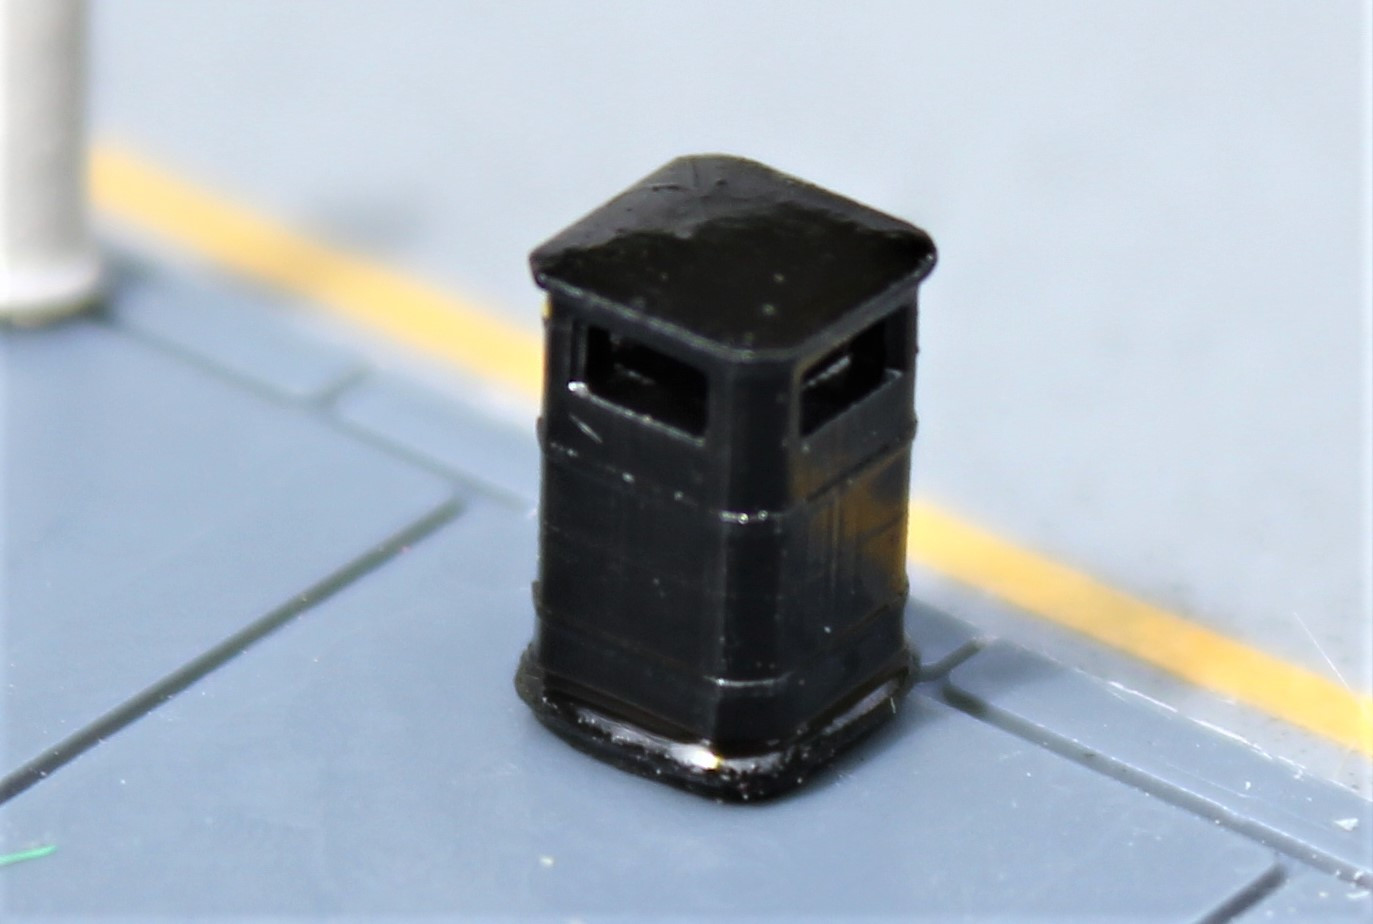 Gaugemaster Kestrel GMKD80 Litter Bins (4 pieces) (N Gauge / 1:148 Scale) ###